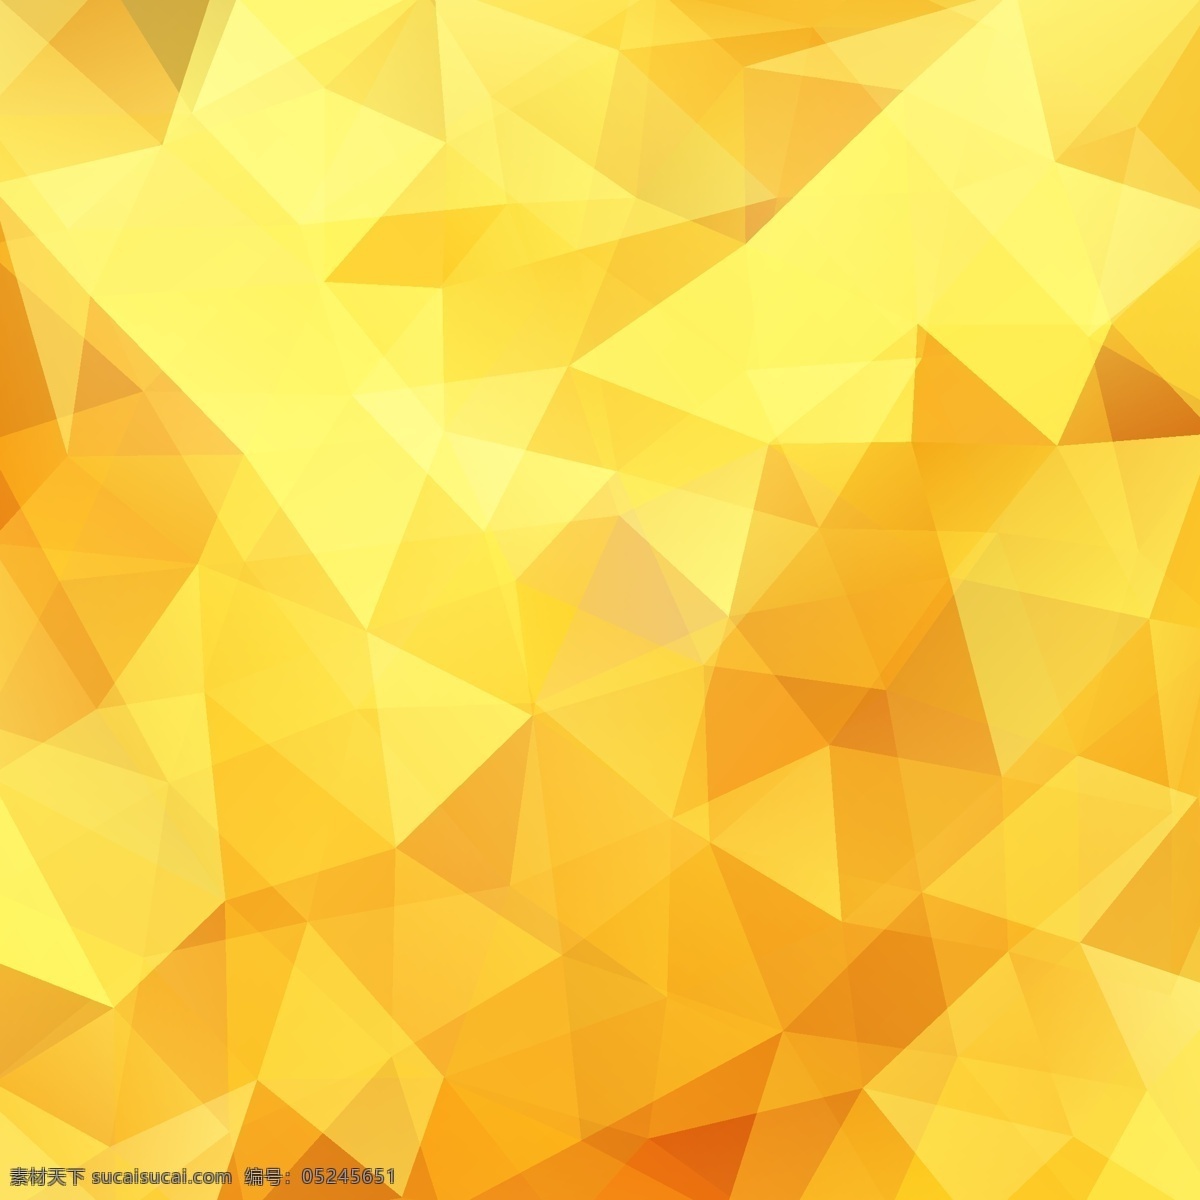 黄色 钻石 质感 背景 马赛克 绚丽 多彩 常用 新年 2016 底纹边框 背景底纹